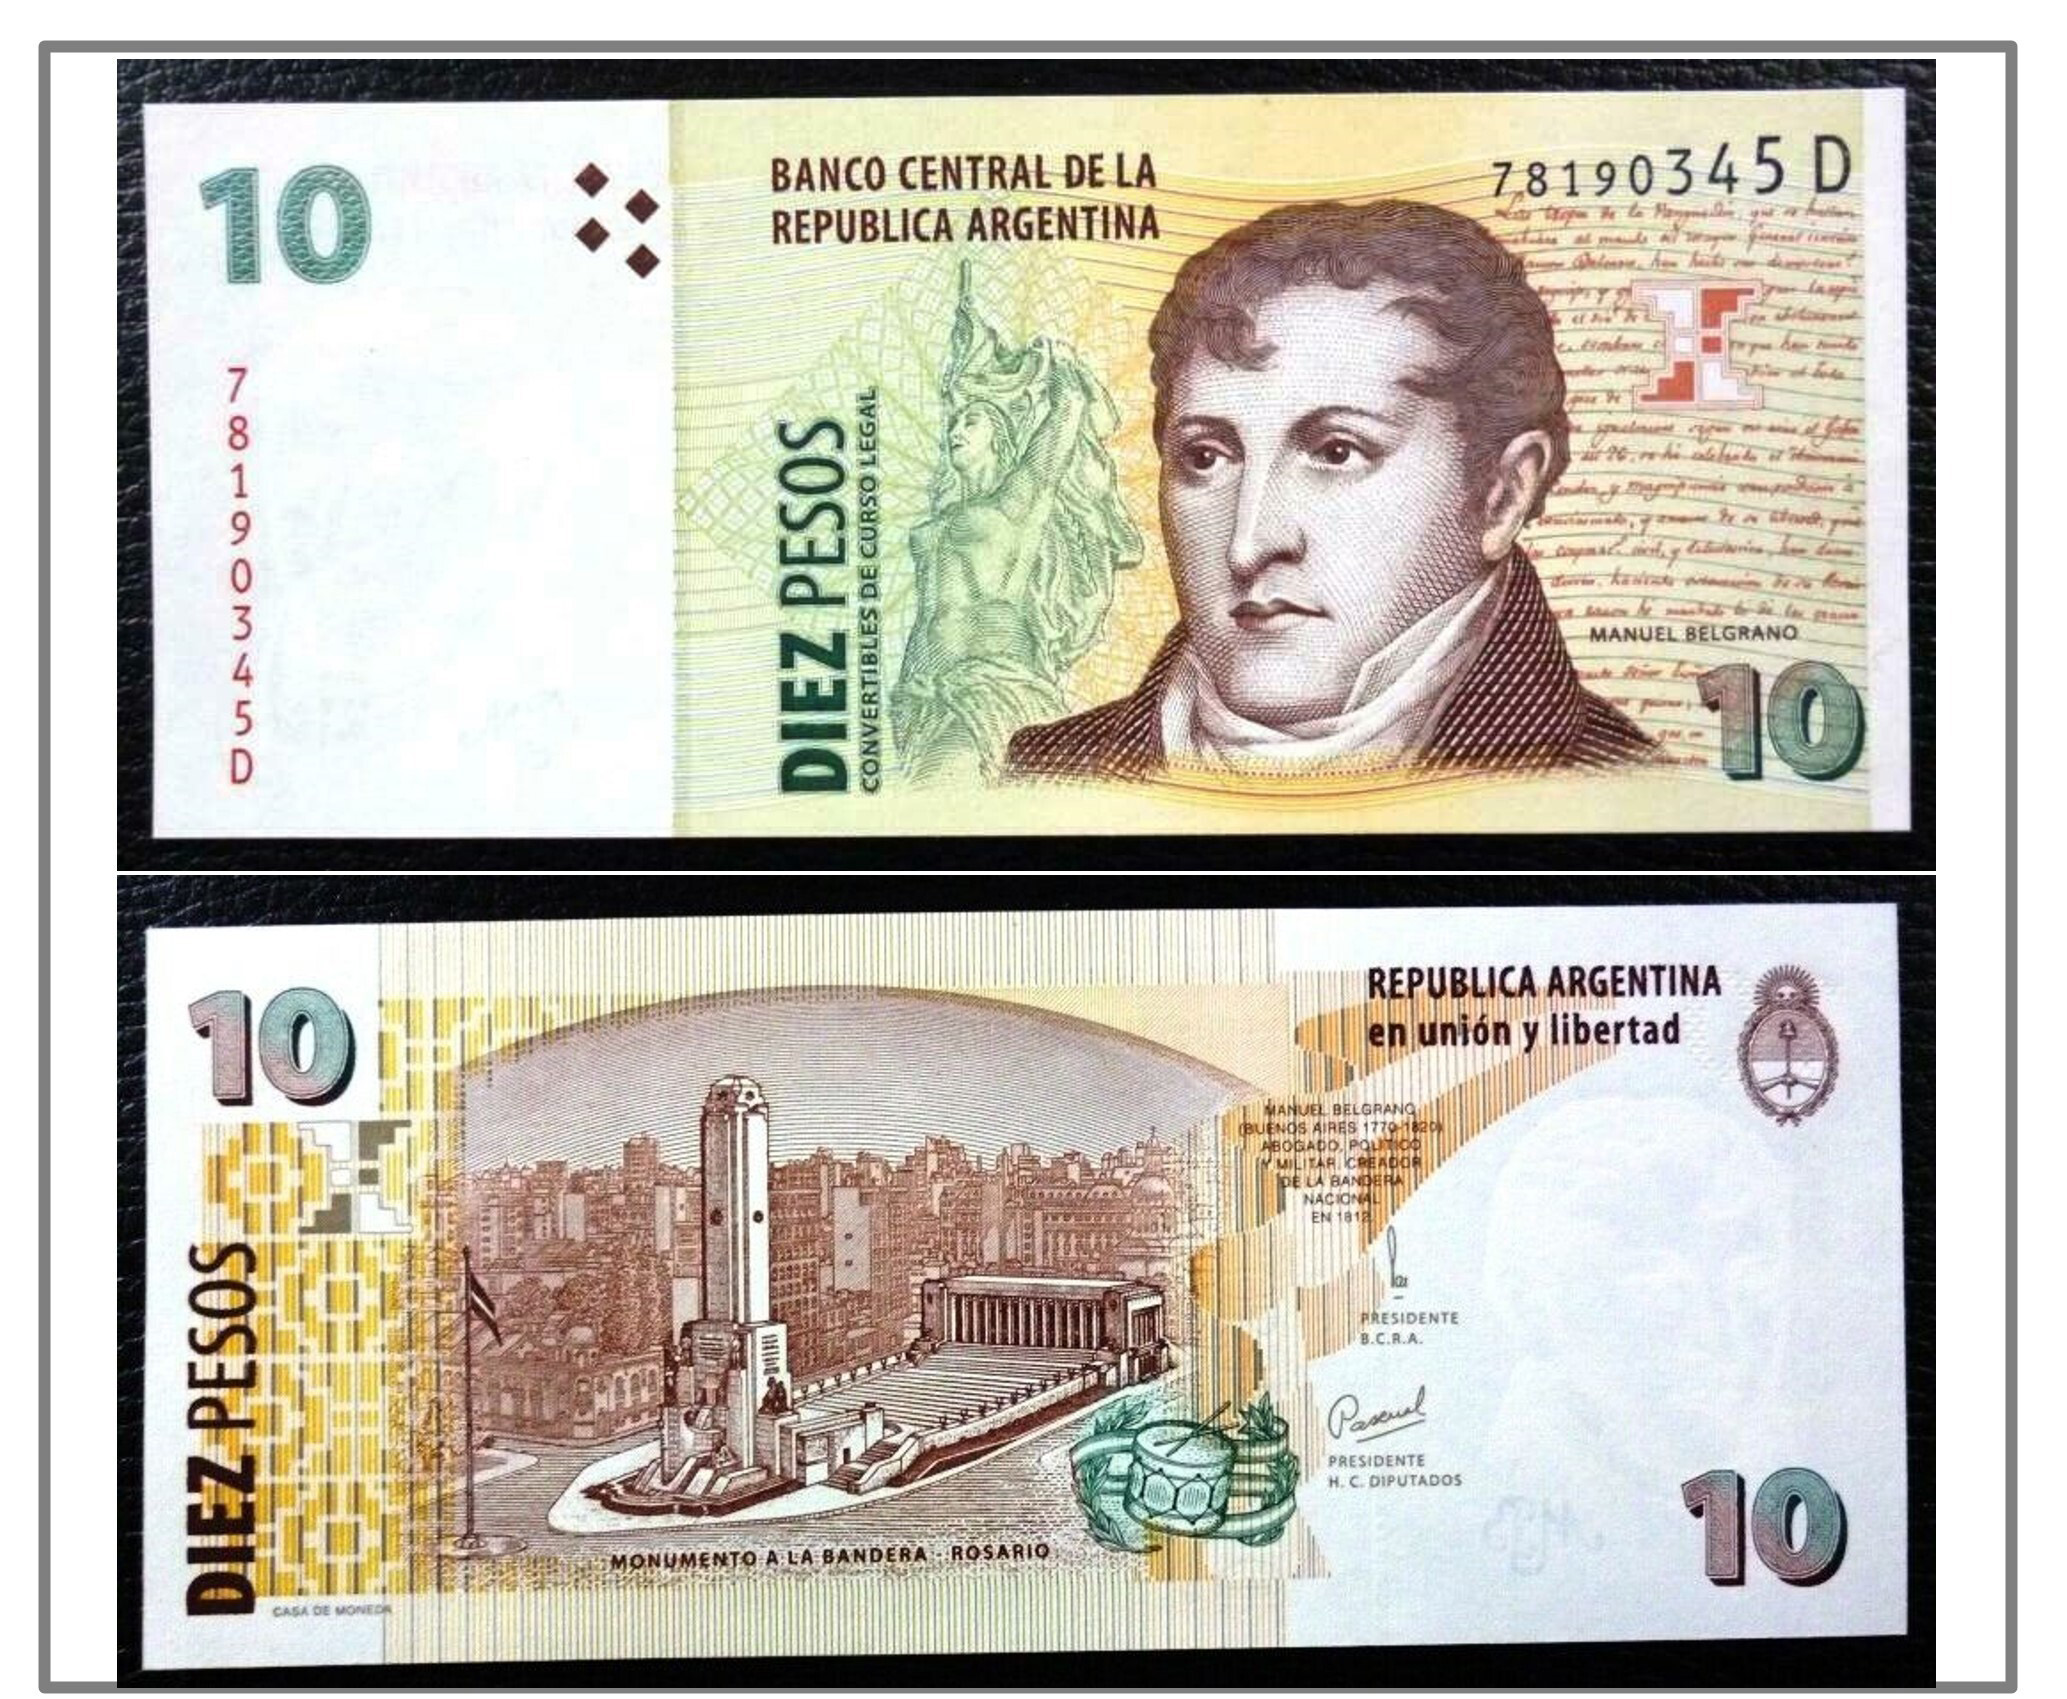 El Monumento a la Bandera en Rosario en el billete de 10 pesos que aún circula